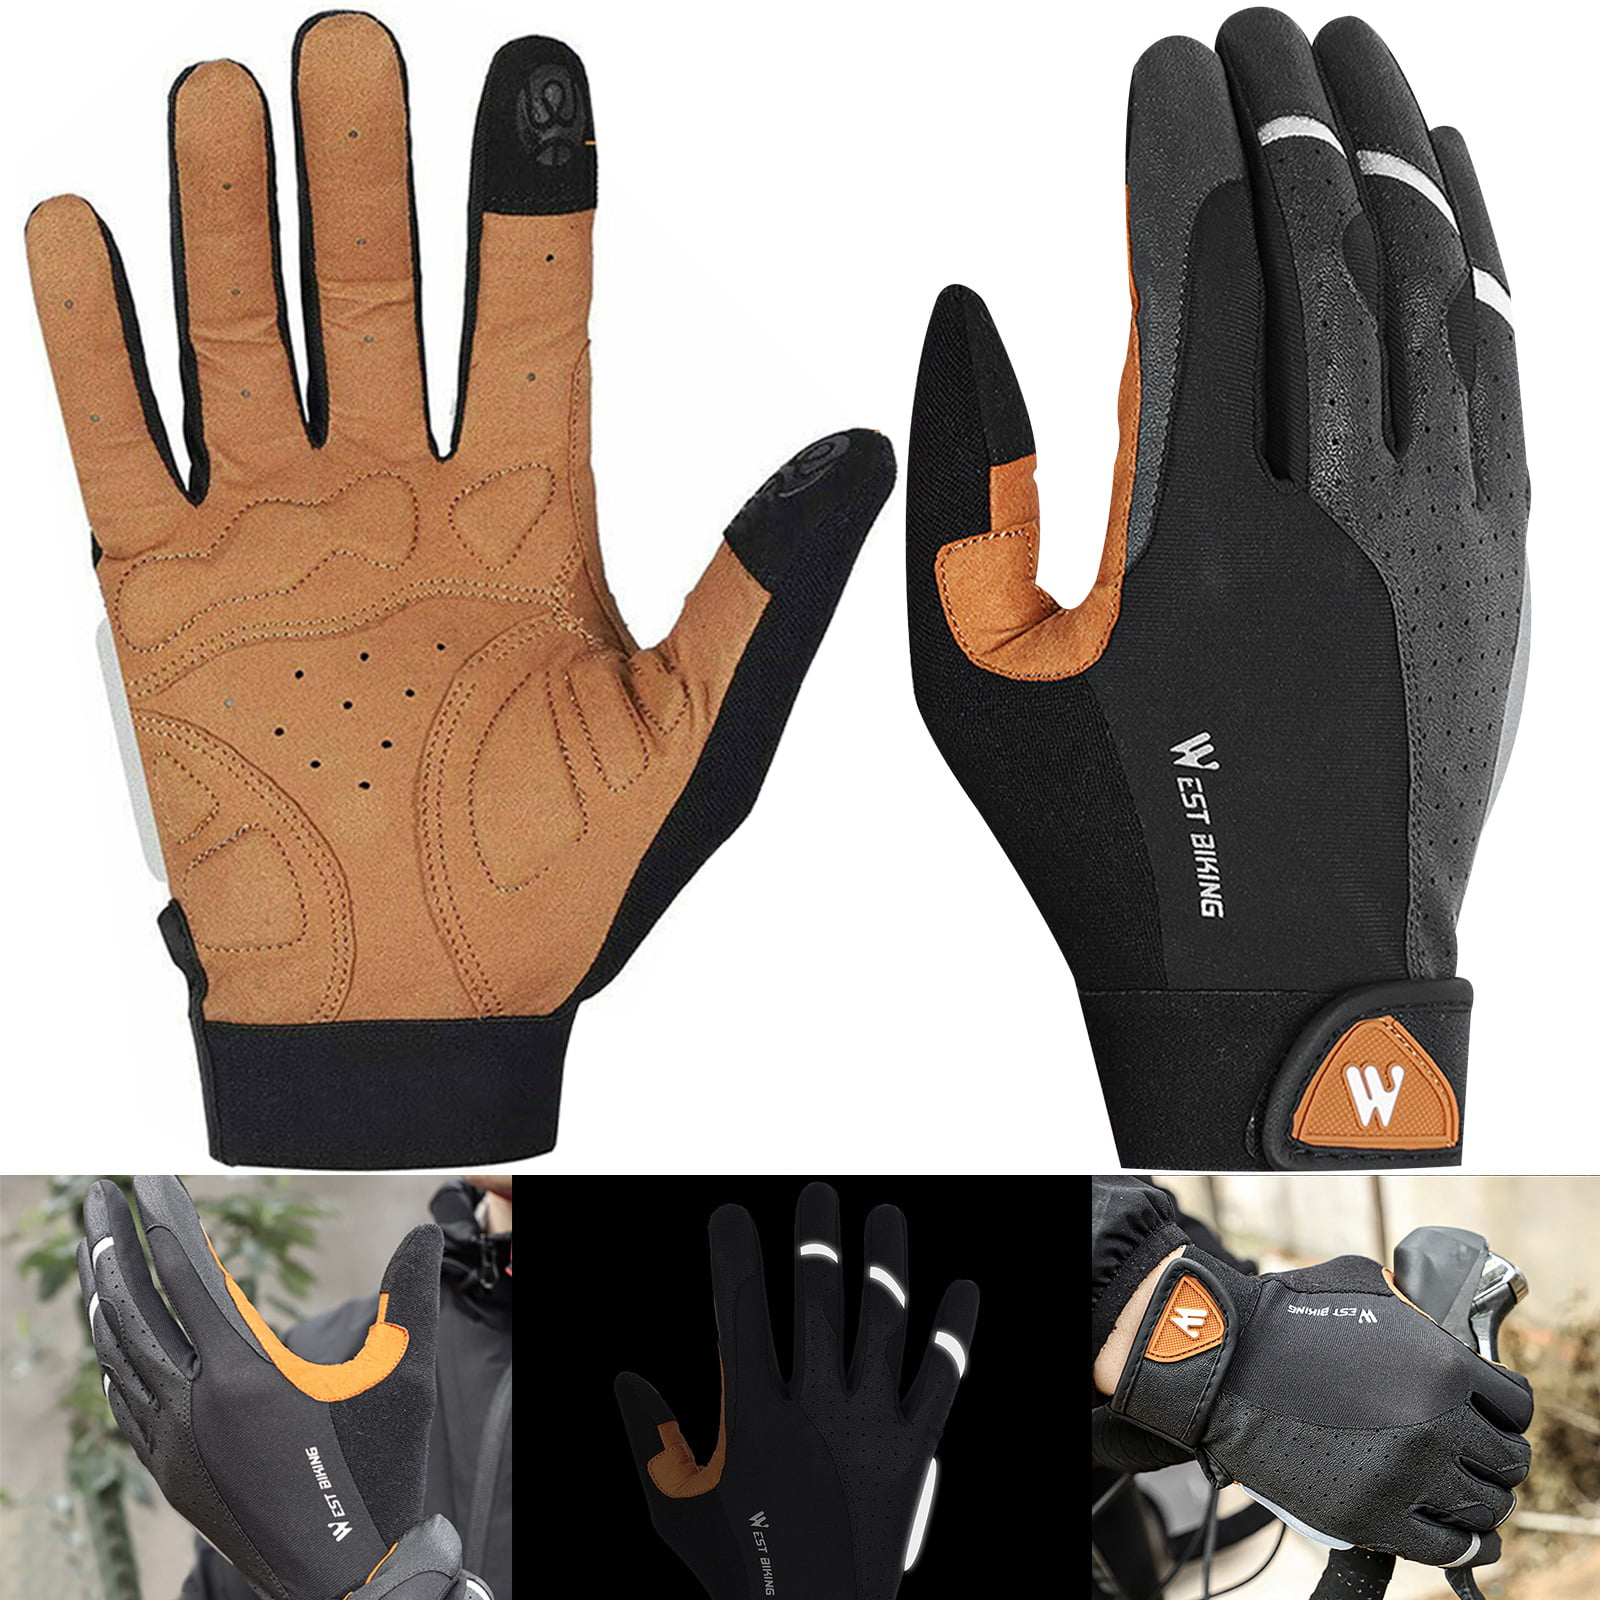 WEST BIKING Cycling Gloves Full Finger Touch Screen Anti Slip Bike Gloves